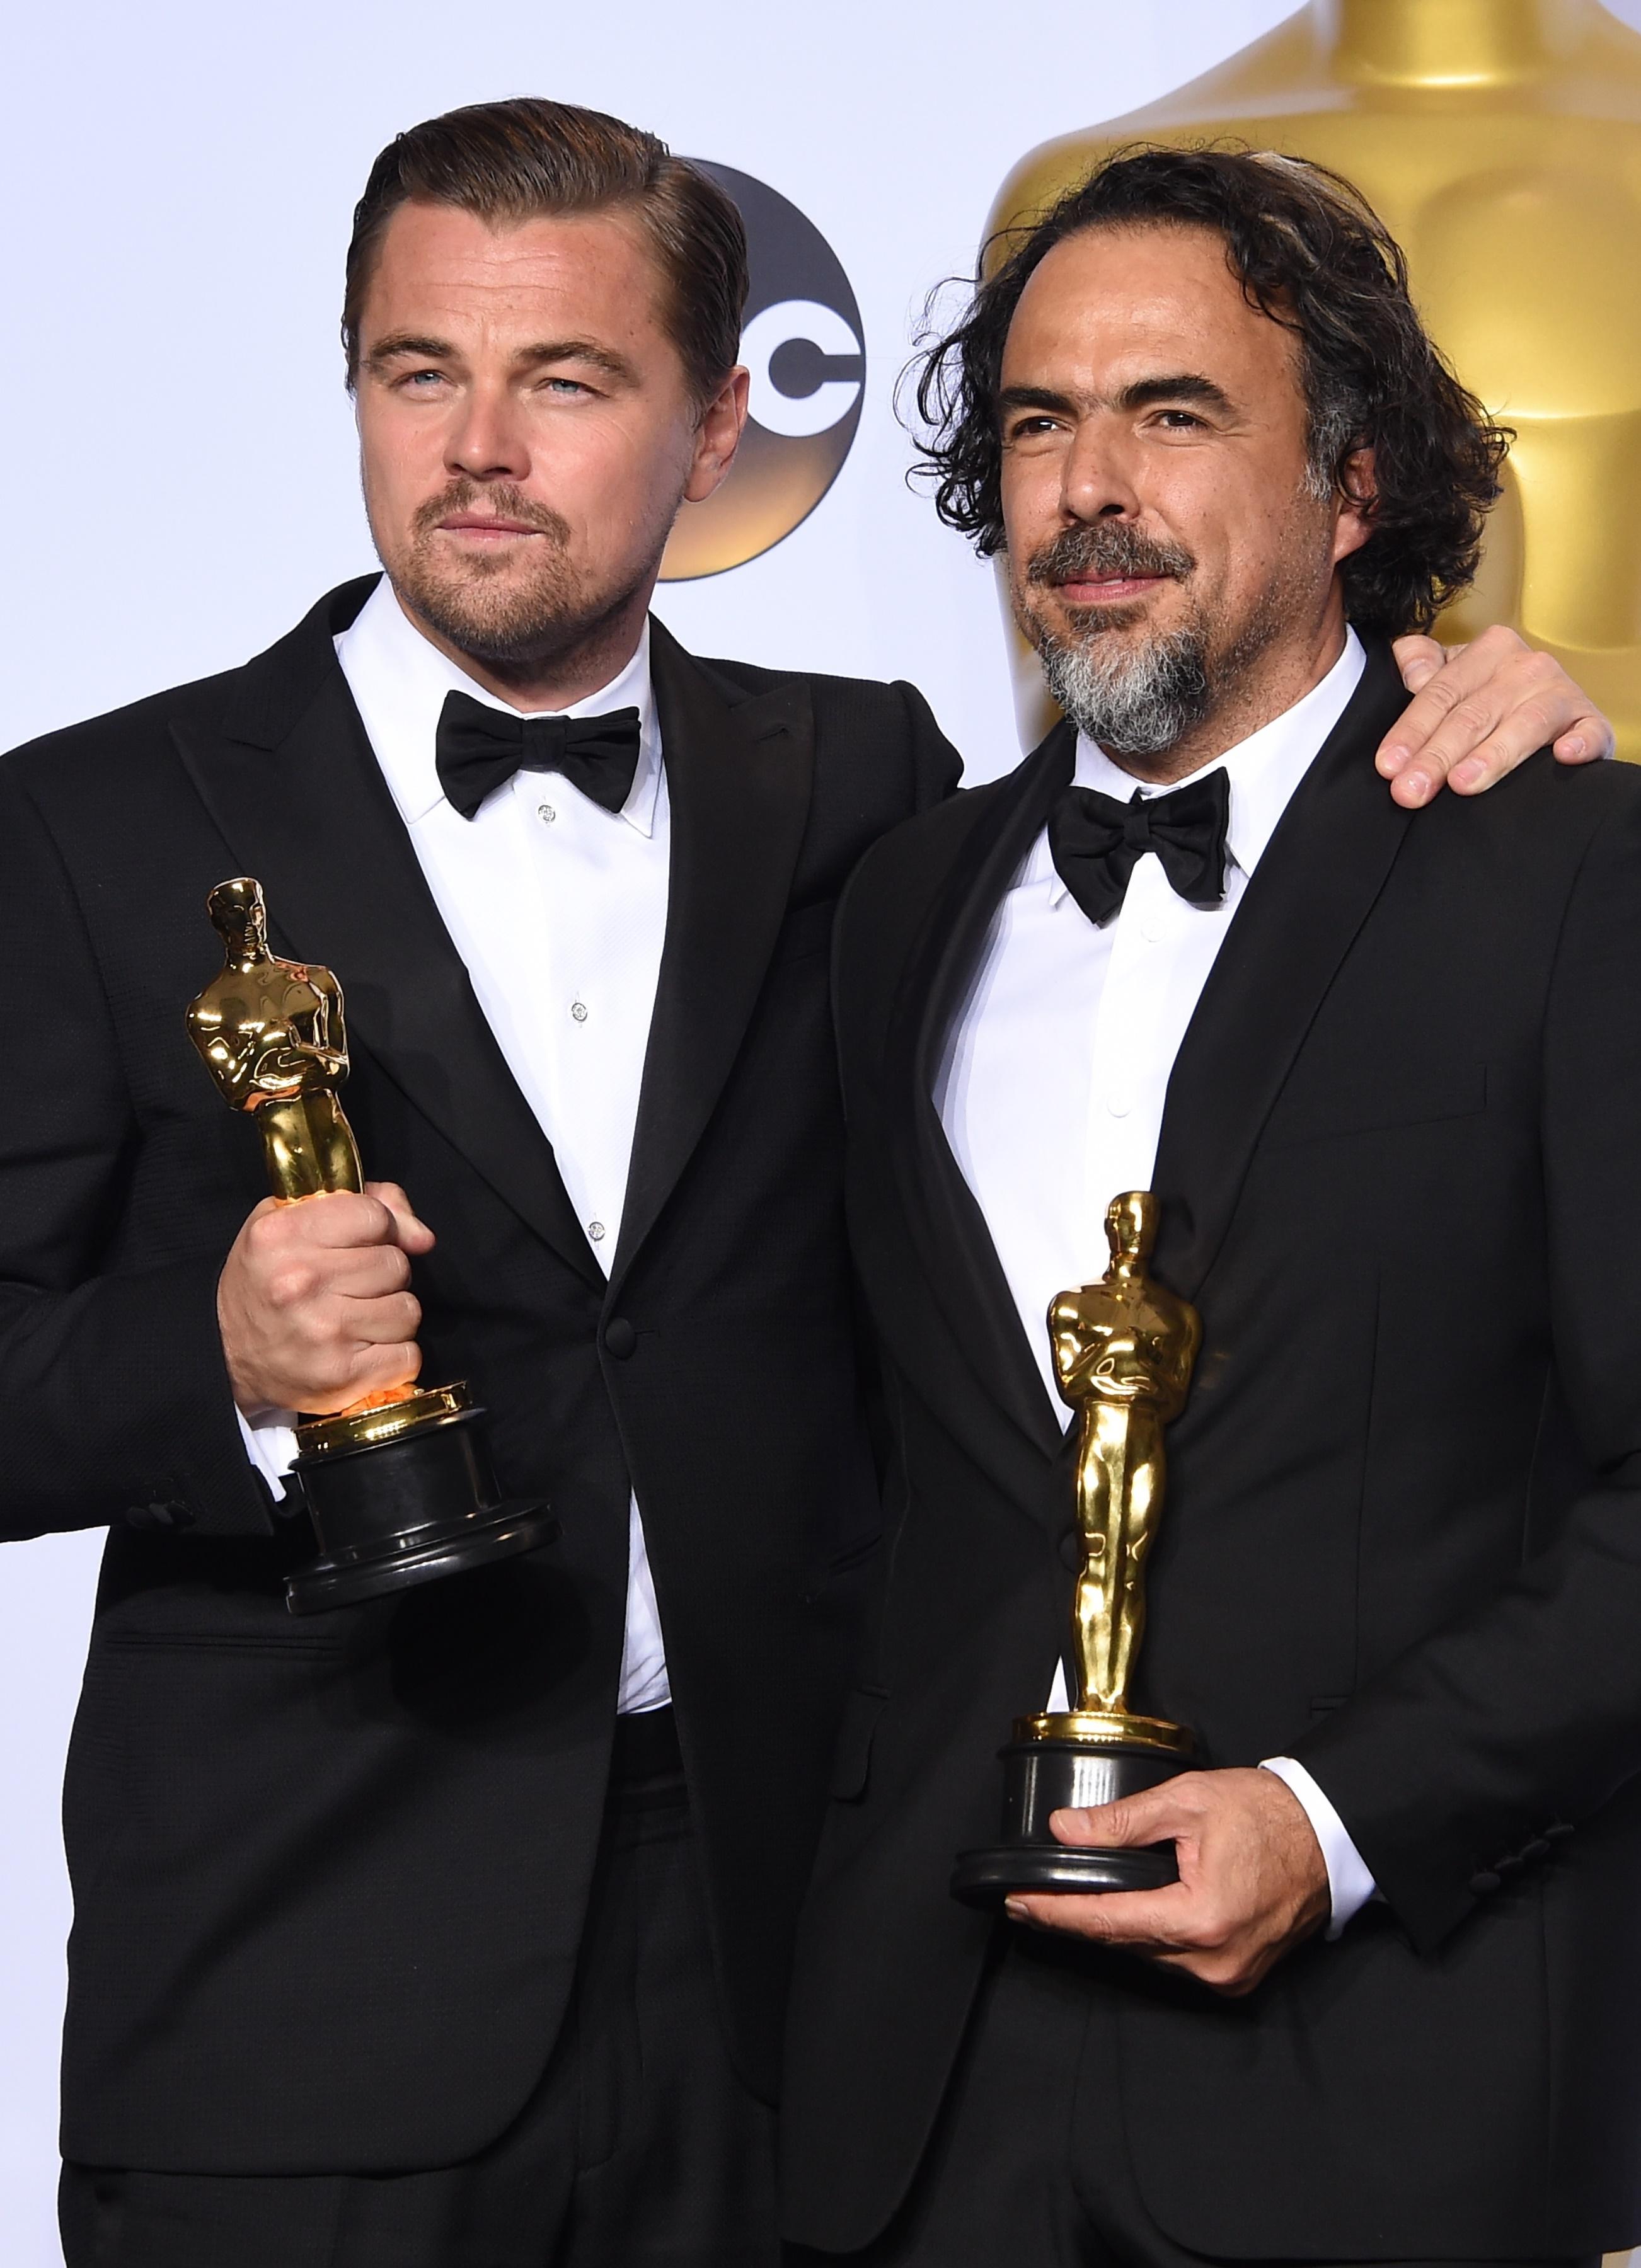 Leonardo DiCaprio in Armani, con il primo premio Oscar come miglior attore protagonista accanto al regista messicano Alejandro G. Iñárritu in Prada, premiato come miglior regista per 'The Revenant' (Afp)